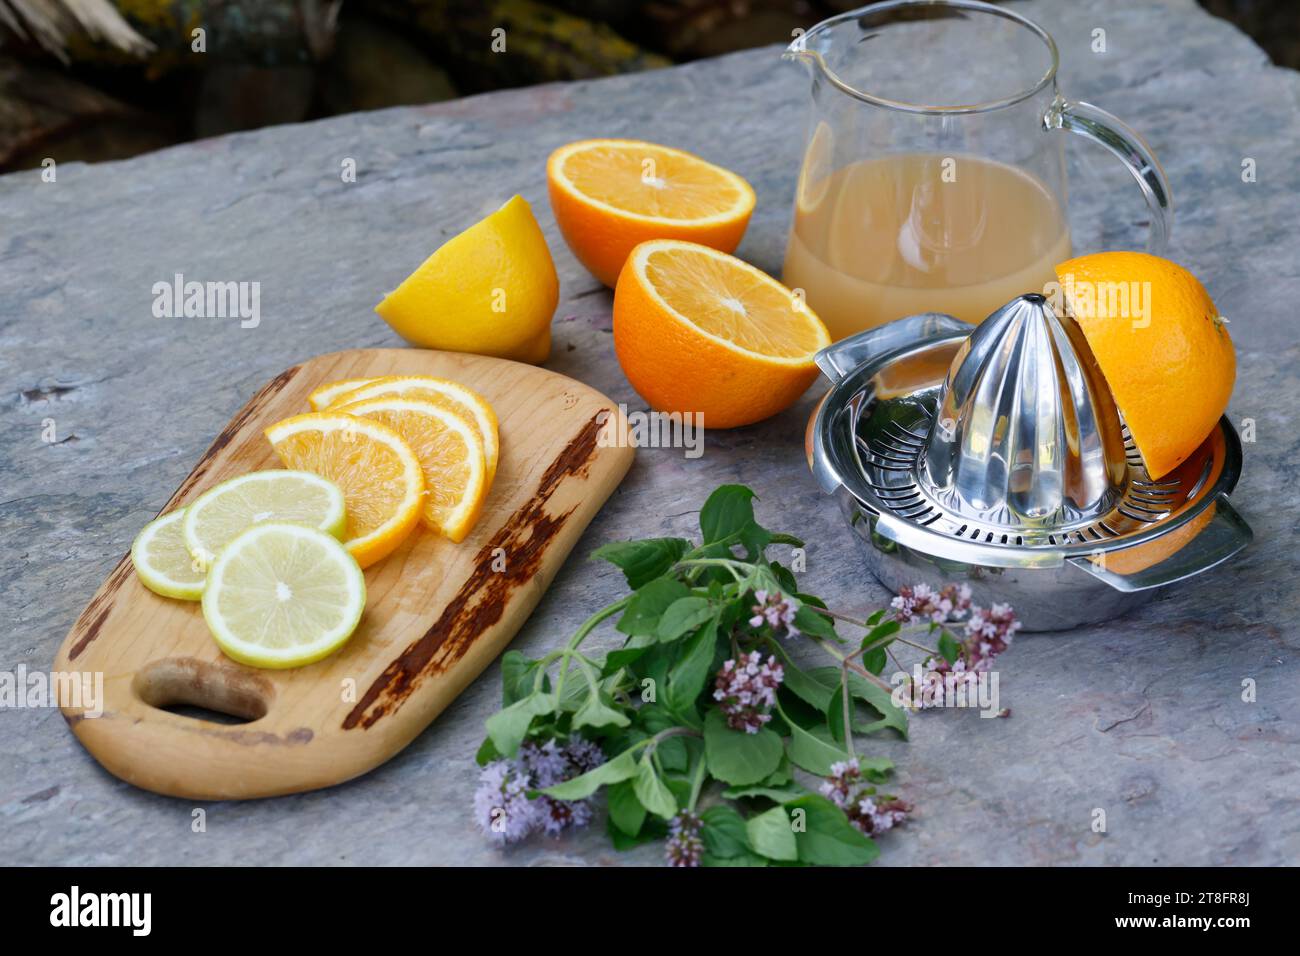 Eistee, Eis-Tee aus Kräutertee gemischt mit Apfelsaft, Saft von Orange, Saft von Zitrone, Iced Tea, ice tea  Schritt 2: Zutaten - Kräutertee, Apfelsaf Stock Photo